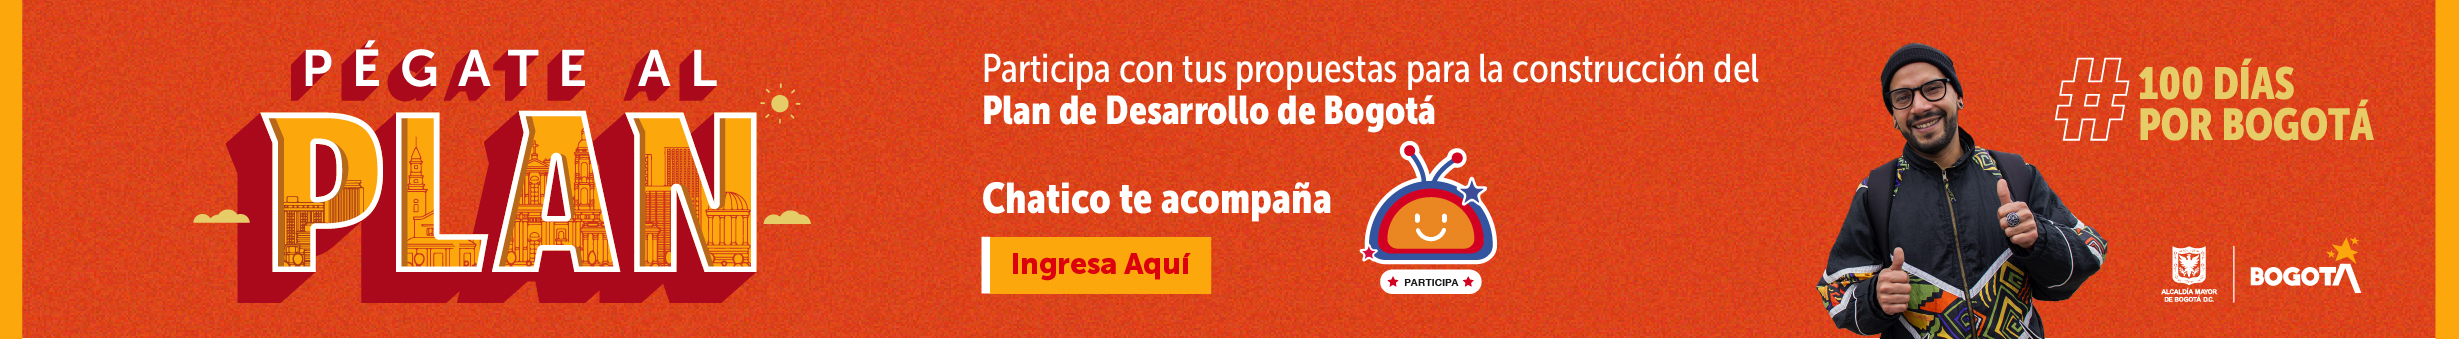 # 100 días por Bogotá "Pégate al PLAN"